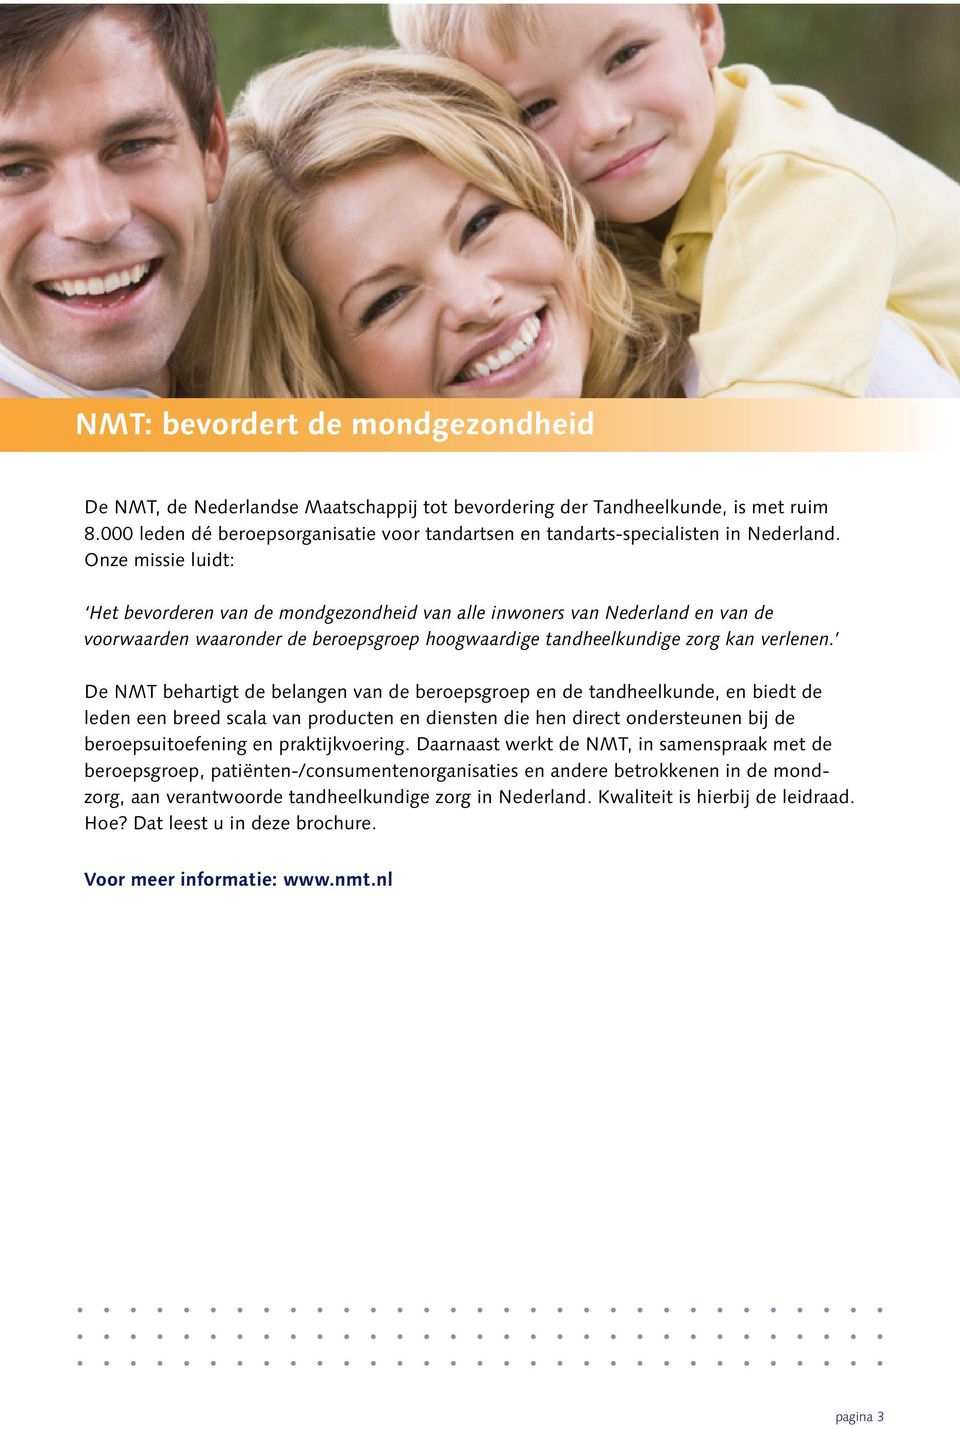 Onze missie luidt: Het bevorderen van de mondgezondheid van alle inwoners van Nederland en van de voorwaarden waaronder de beroepsgroep hoogwaardige tandheelkundige zorg kan verlenen.